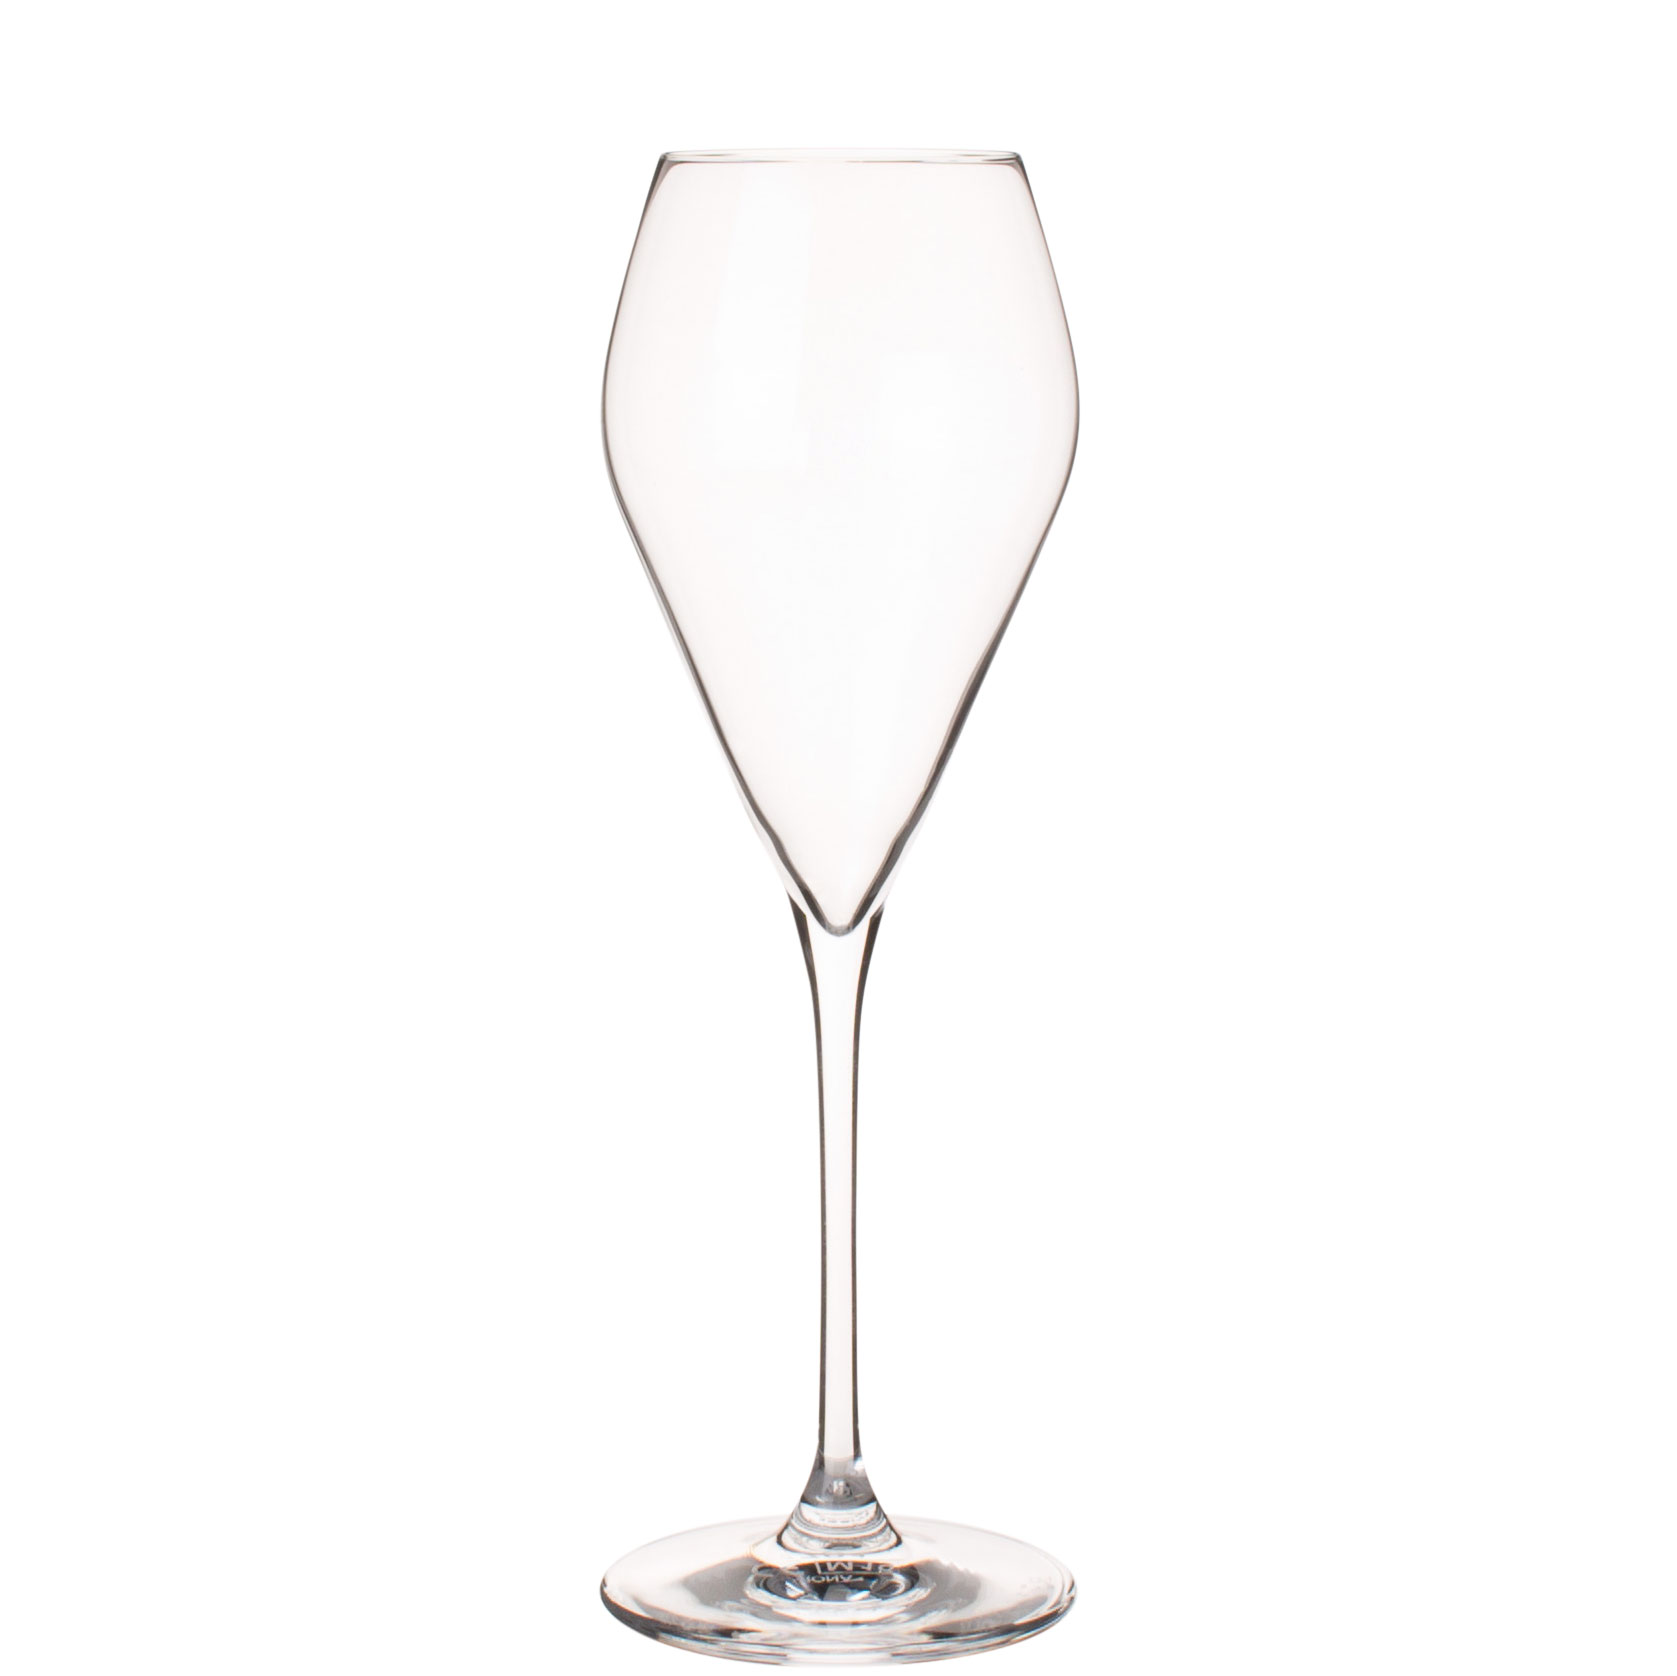 Prosecco glass Mode, Rona - 240ml (1 pc.)